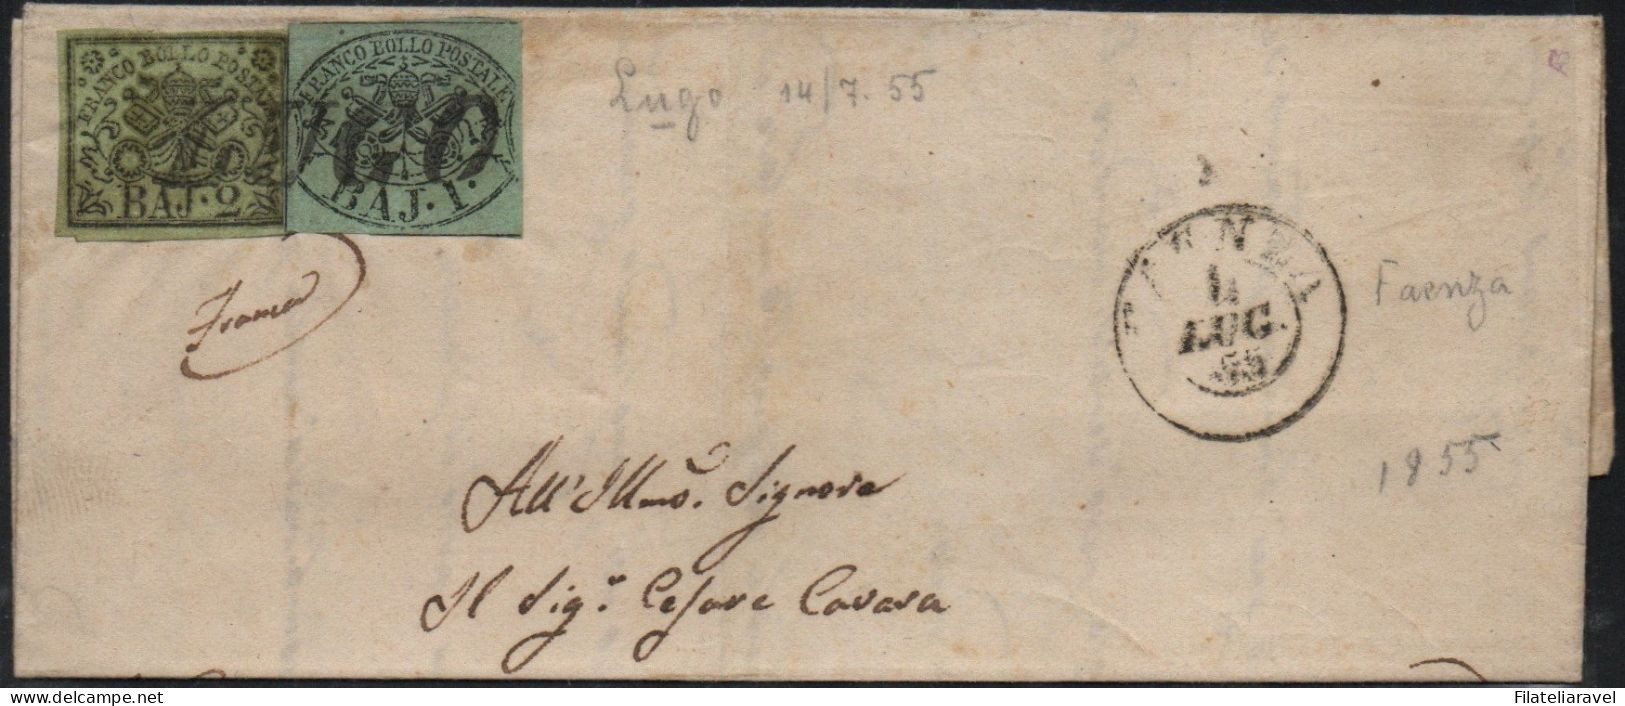 ASI -1857 - STATO PONTIFICIO - Lettera Completa Di Testo Partita Da Fulignano Il 4 Luglio 1855 E Diretta A Bologna - Estados Pontificados